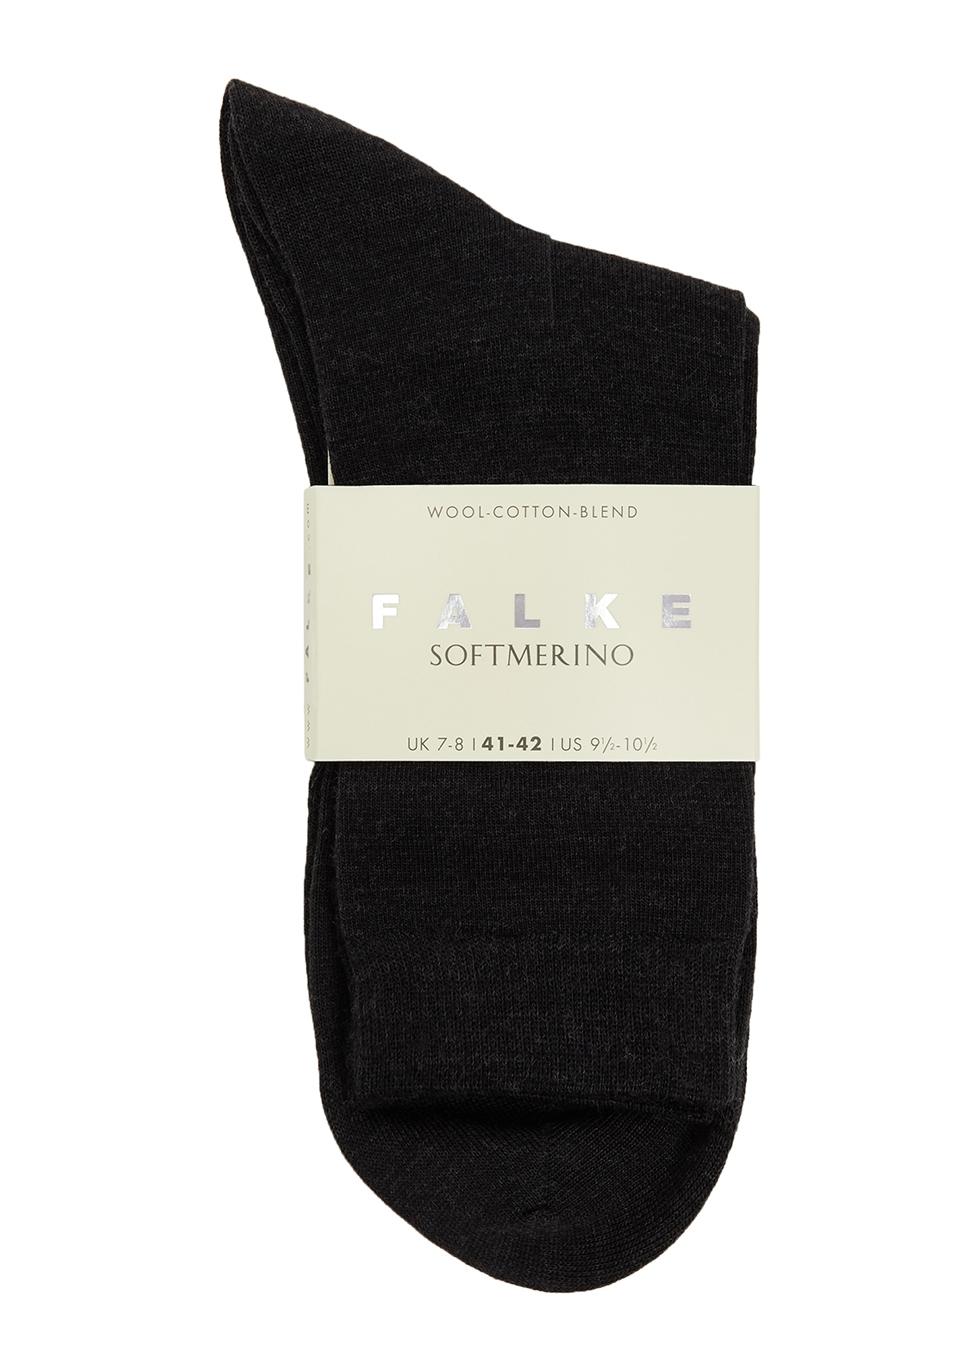 FALKE Soft Merino Wool-blend Socks in Black for Men | Lyst